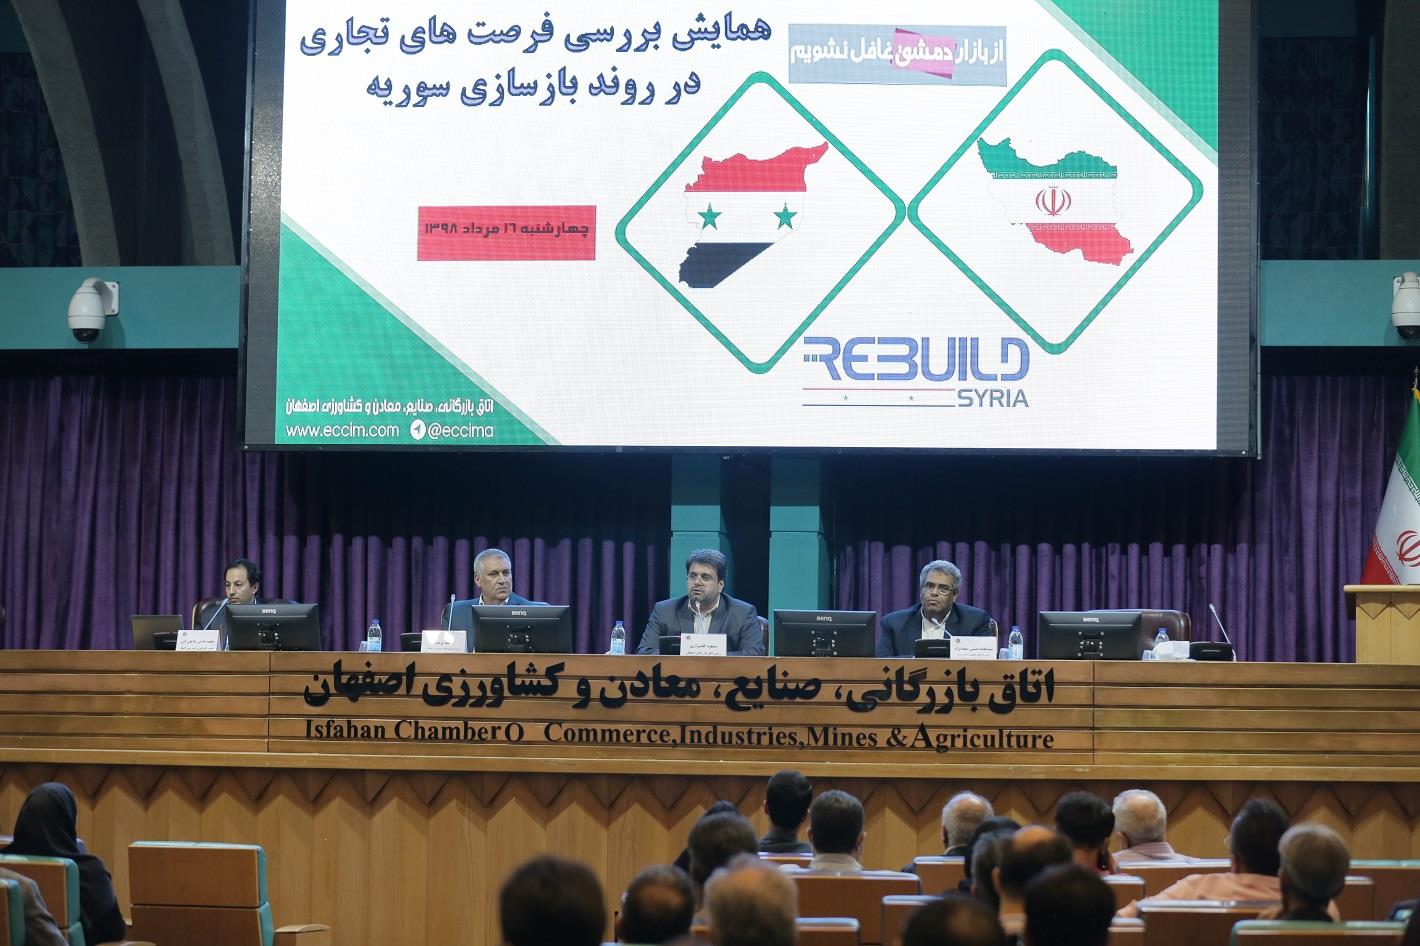 فعالان اقتصادی استان اصفهان شعبه ای از شرکتشان را در سوریه به ثبت برسانند